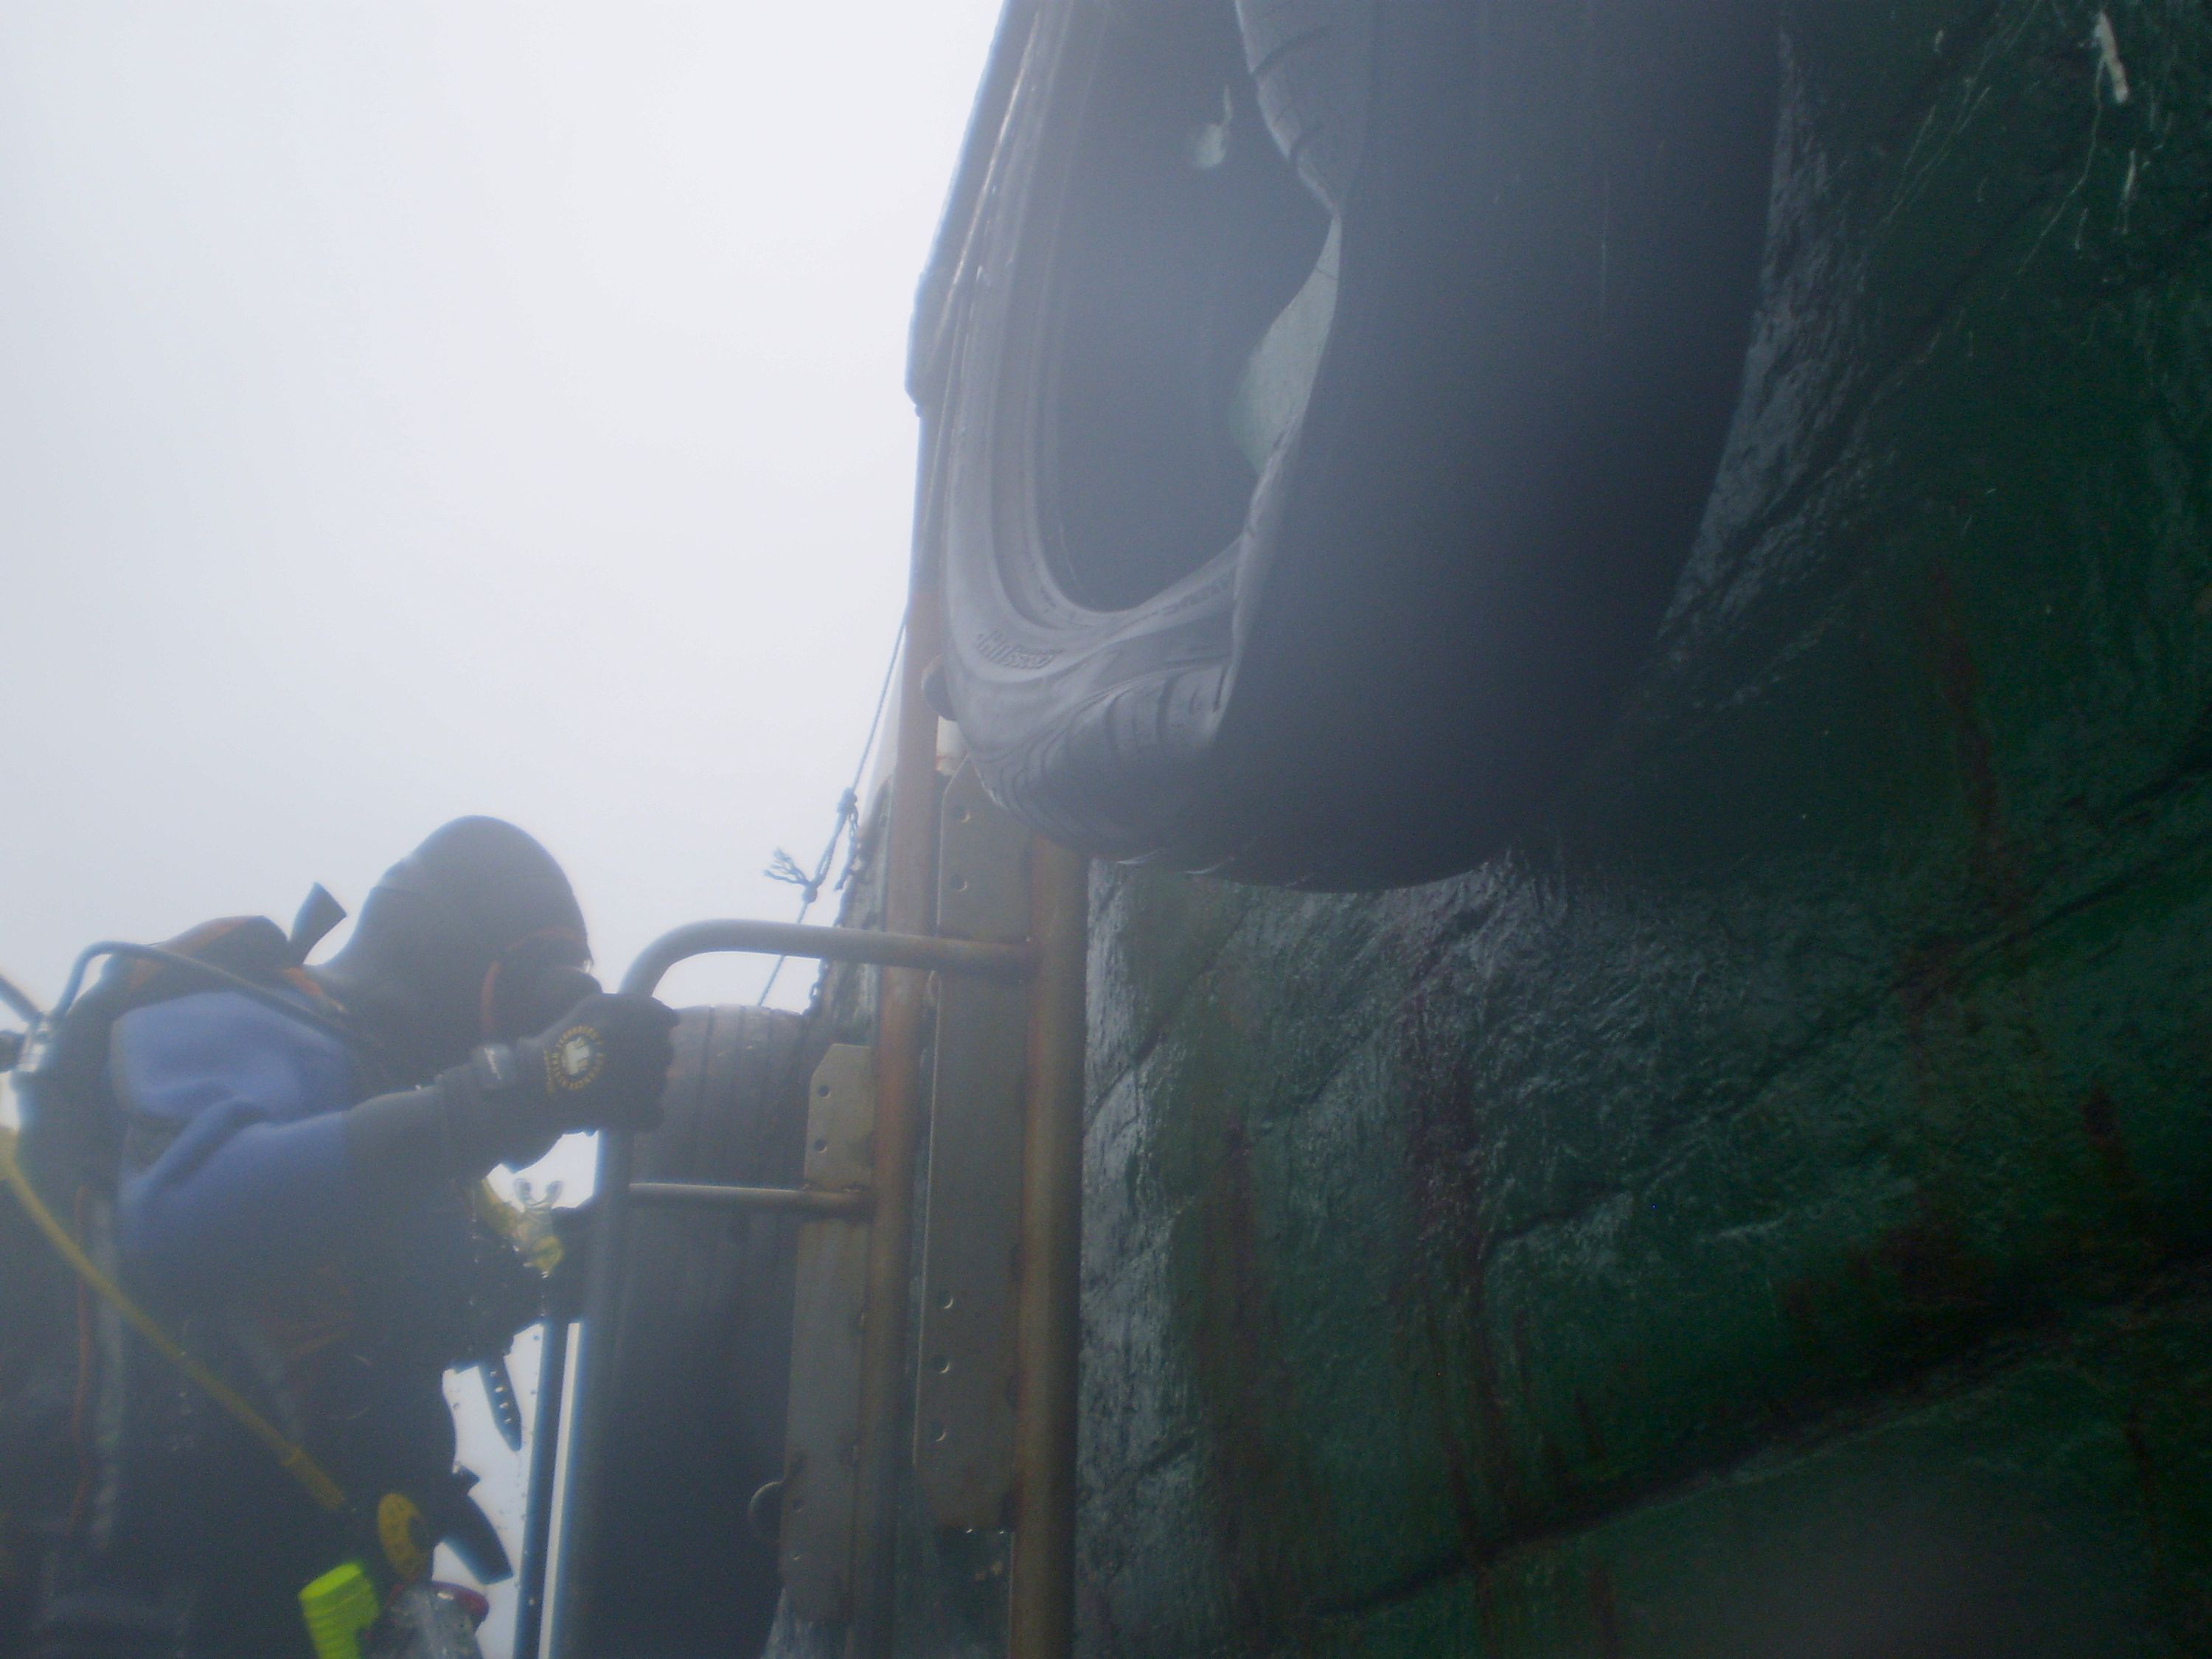 Divers lift Scapa Flow